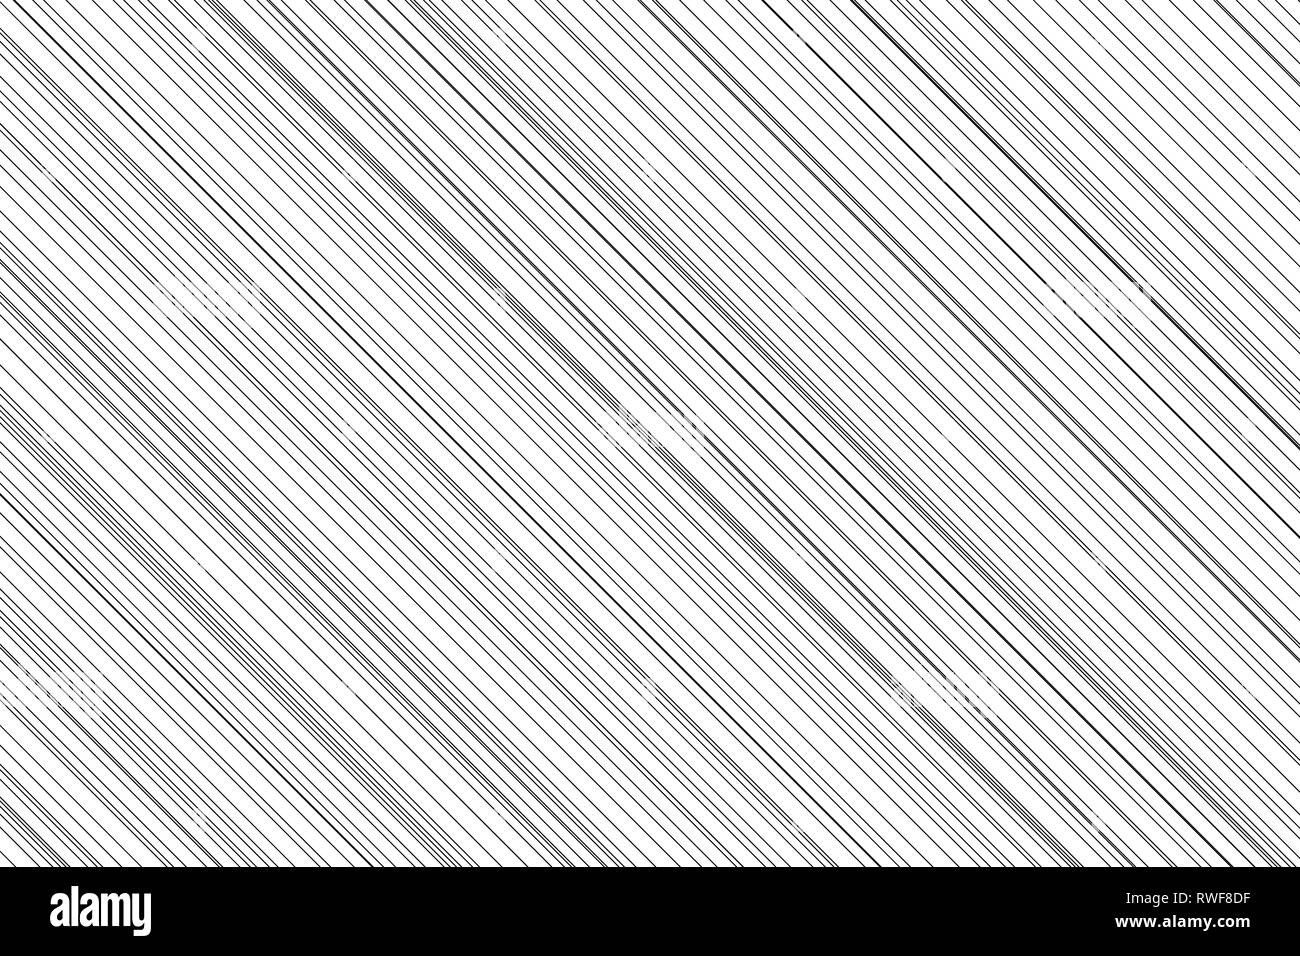 Résumé motif de fond, noir à rayures diagonales sur fond blanc en ligne Banque D'Images